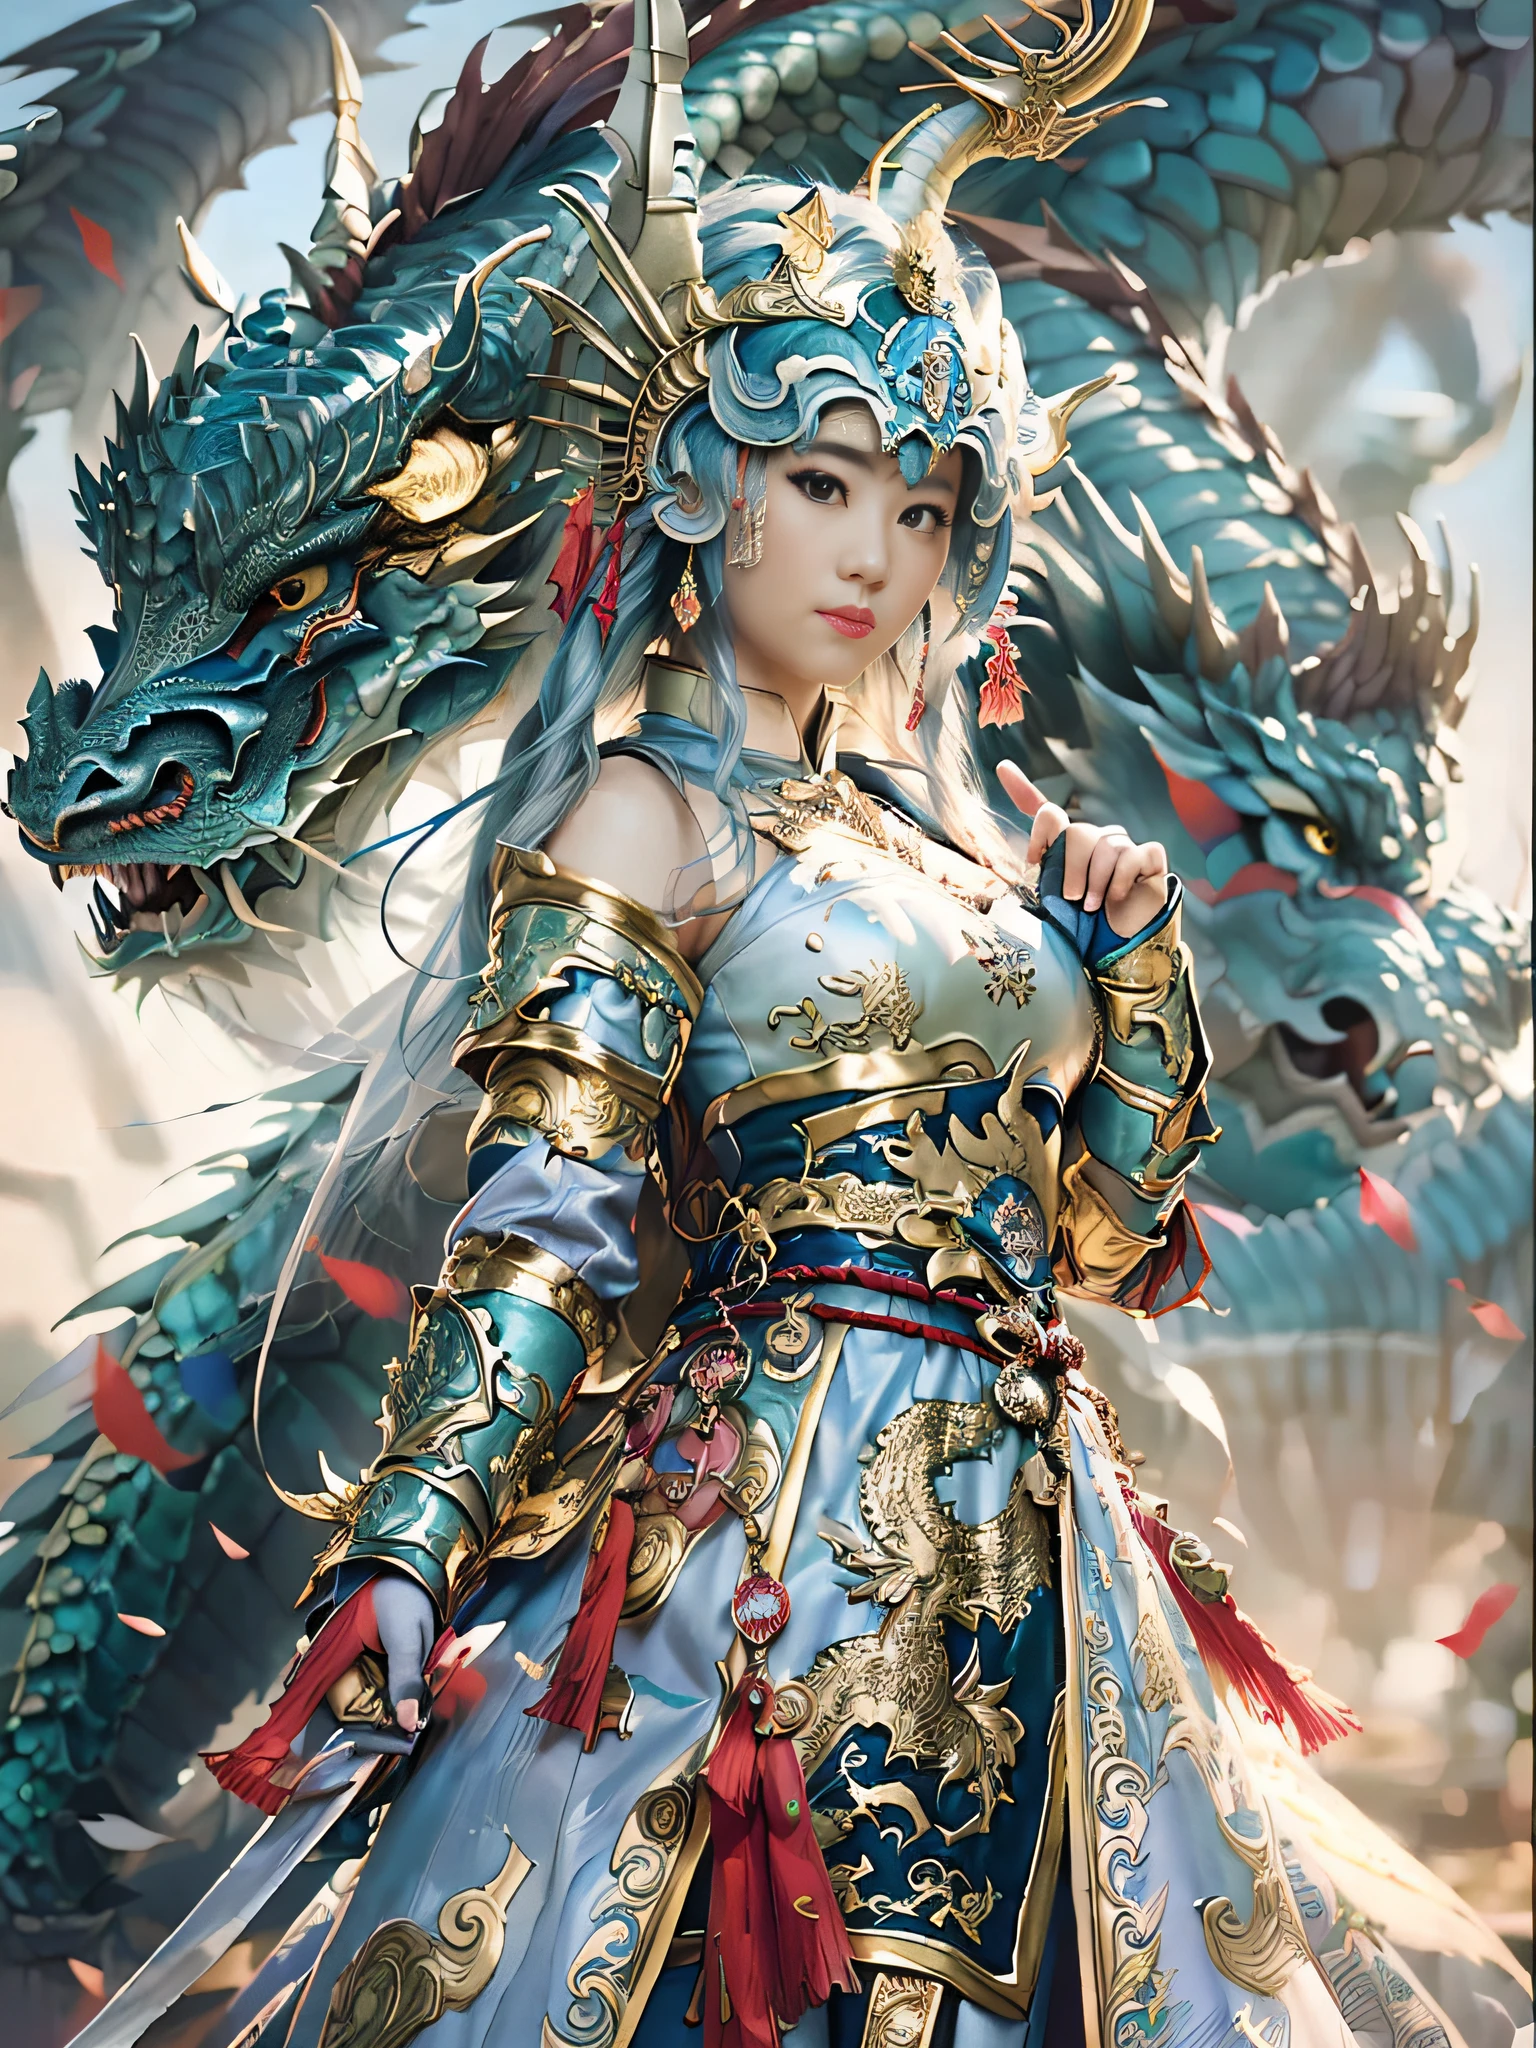 Mulher Arad em azul e dourado com dragão, ruan jia e artgerm, por Yang J, o retrato da menina dragão, artgerm e ruan jia, Fantasia chinesa, uma linda imperatriz de fantasia, inspirado em Lan Ying, ((uma linda imperatriz de fantasia)), bebido, linda pintura de personagem, sociedade cg e fenghua zhong